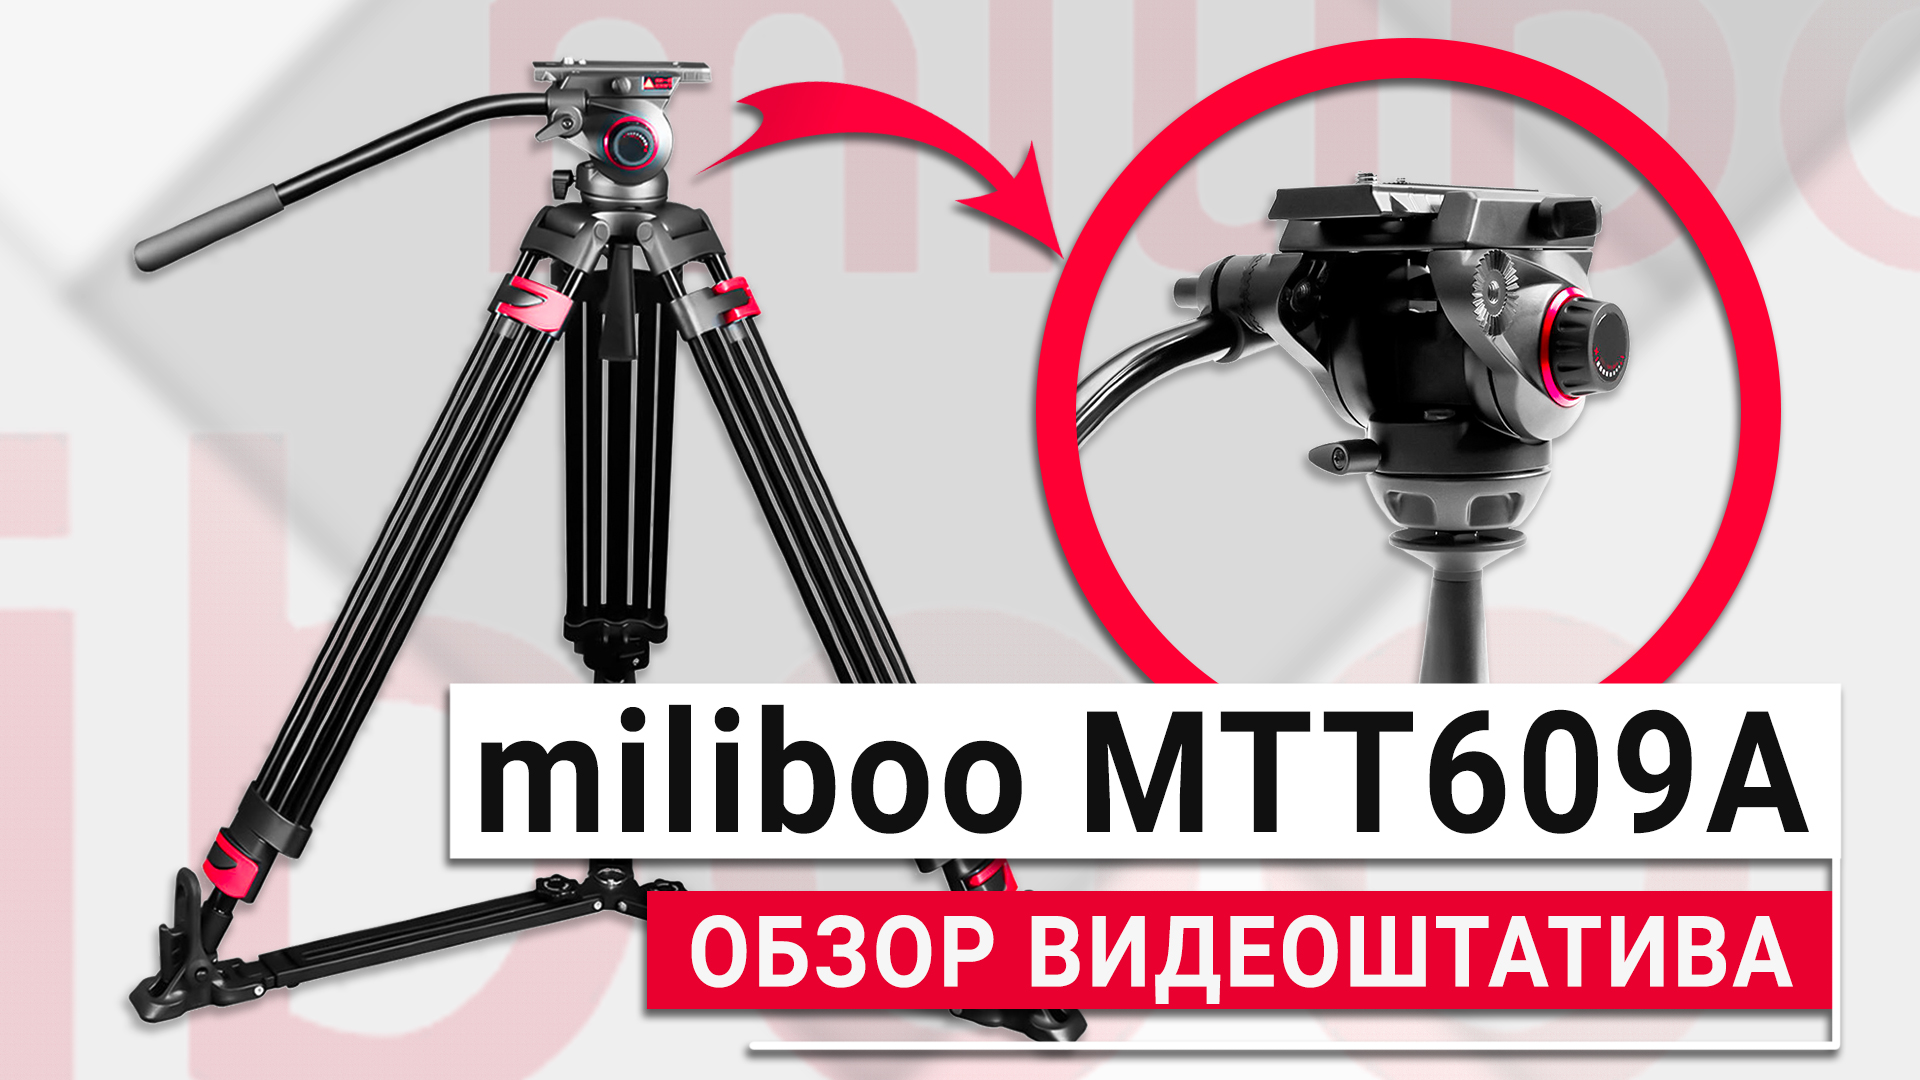 Бюджетный профессиональный видеоштатив - Miliboo MTT609A | Обзор аналога Manfrotto